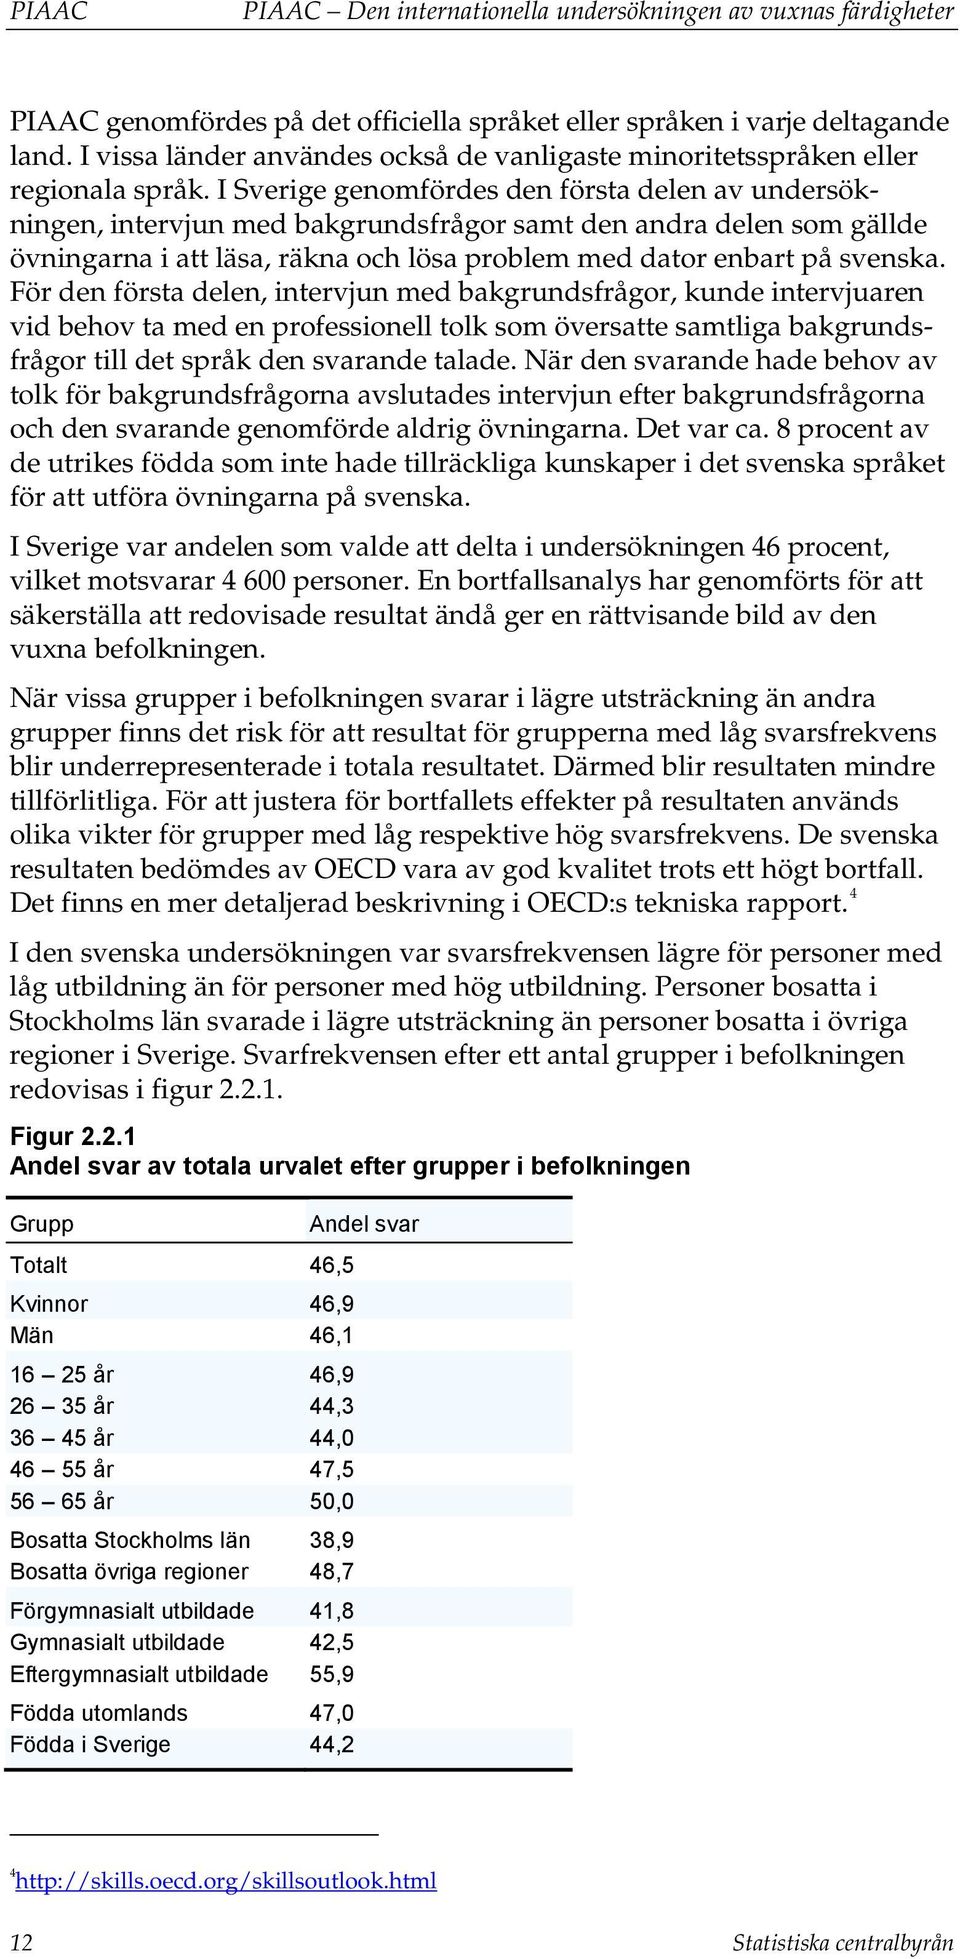 I Sverige genomfördes den första delen av undersökningen, intervjun med bakgrundsfrågor samt den andra delen som gällde övningarna i att läsa, räkna och lösa problem med dator enbart på svenska.